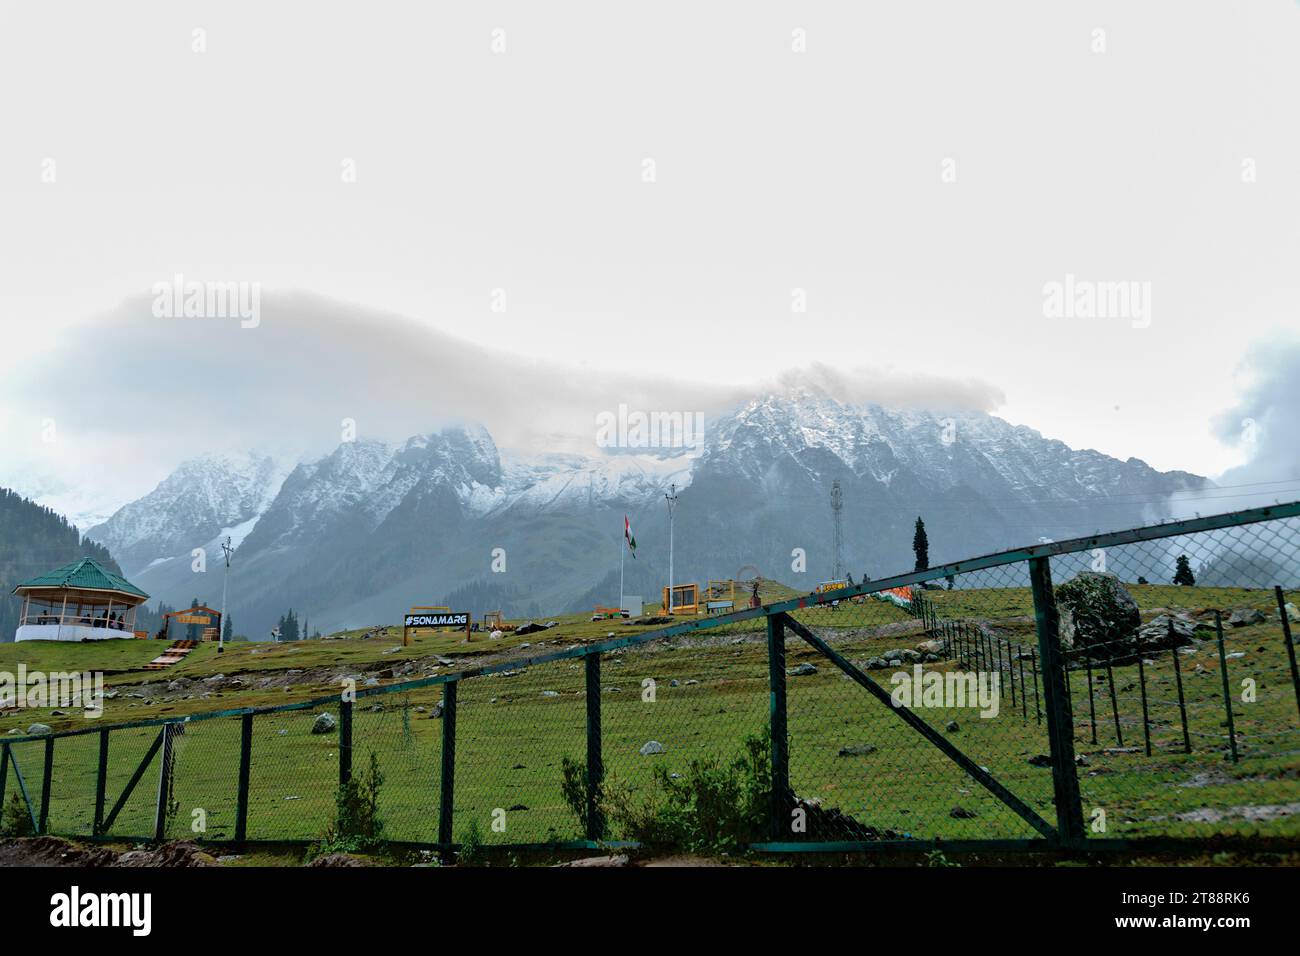 Montagne enneigée dans la station de colline de Sonamarg au Jammu Cachemire inde. Banque D'Images